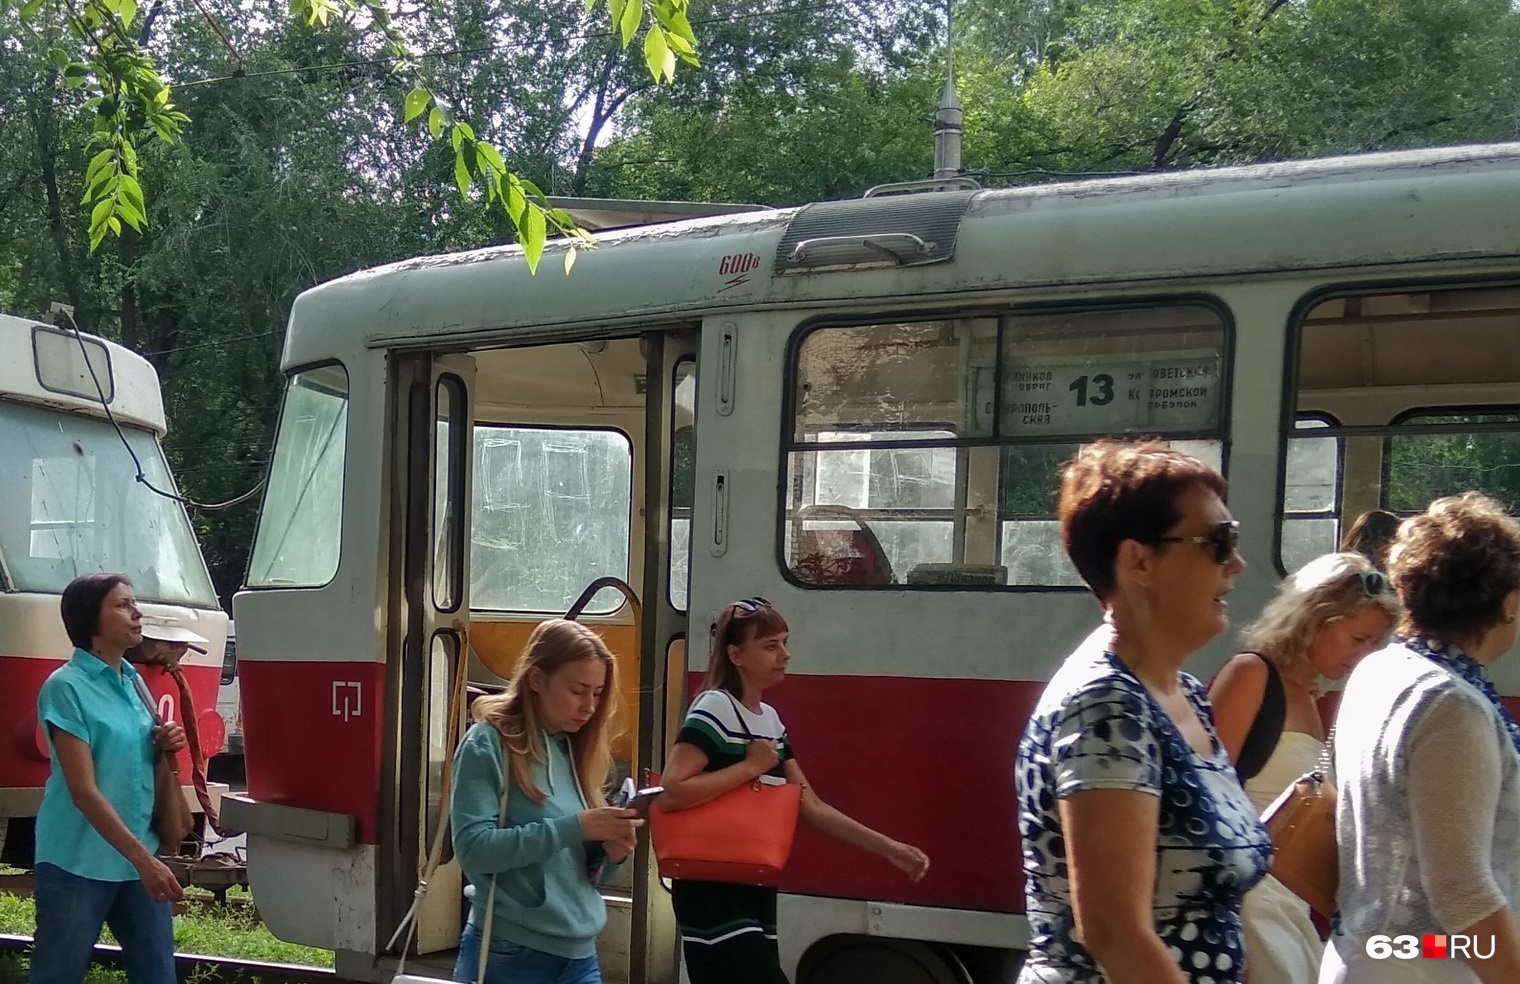 «Люди будут недовольны»: в мэрии Самары рассказали о последствиях продления маршрута трамвая № 13